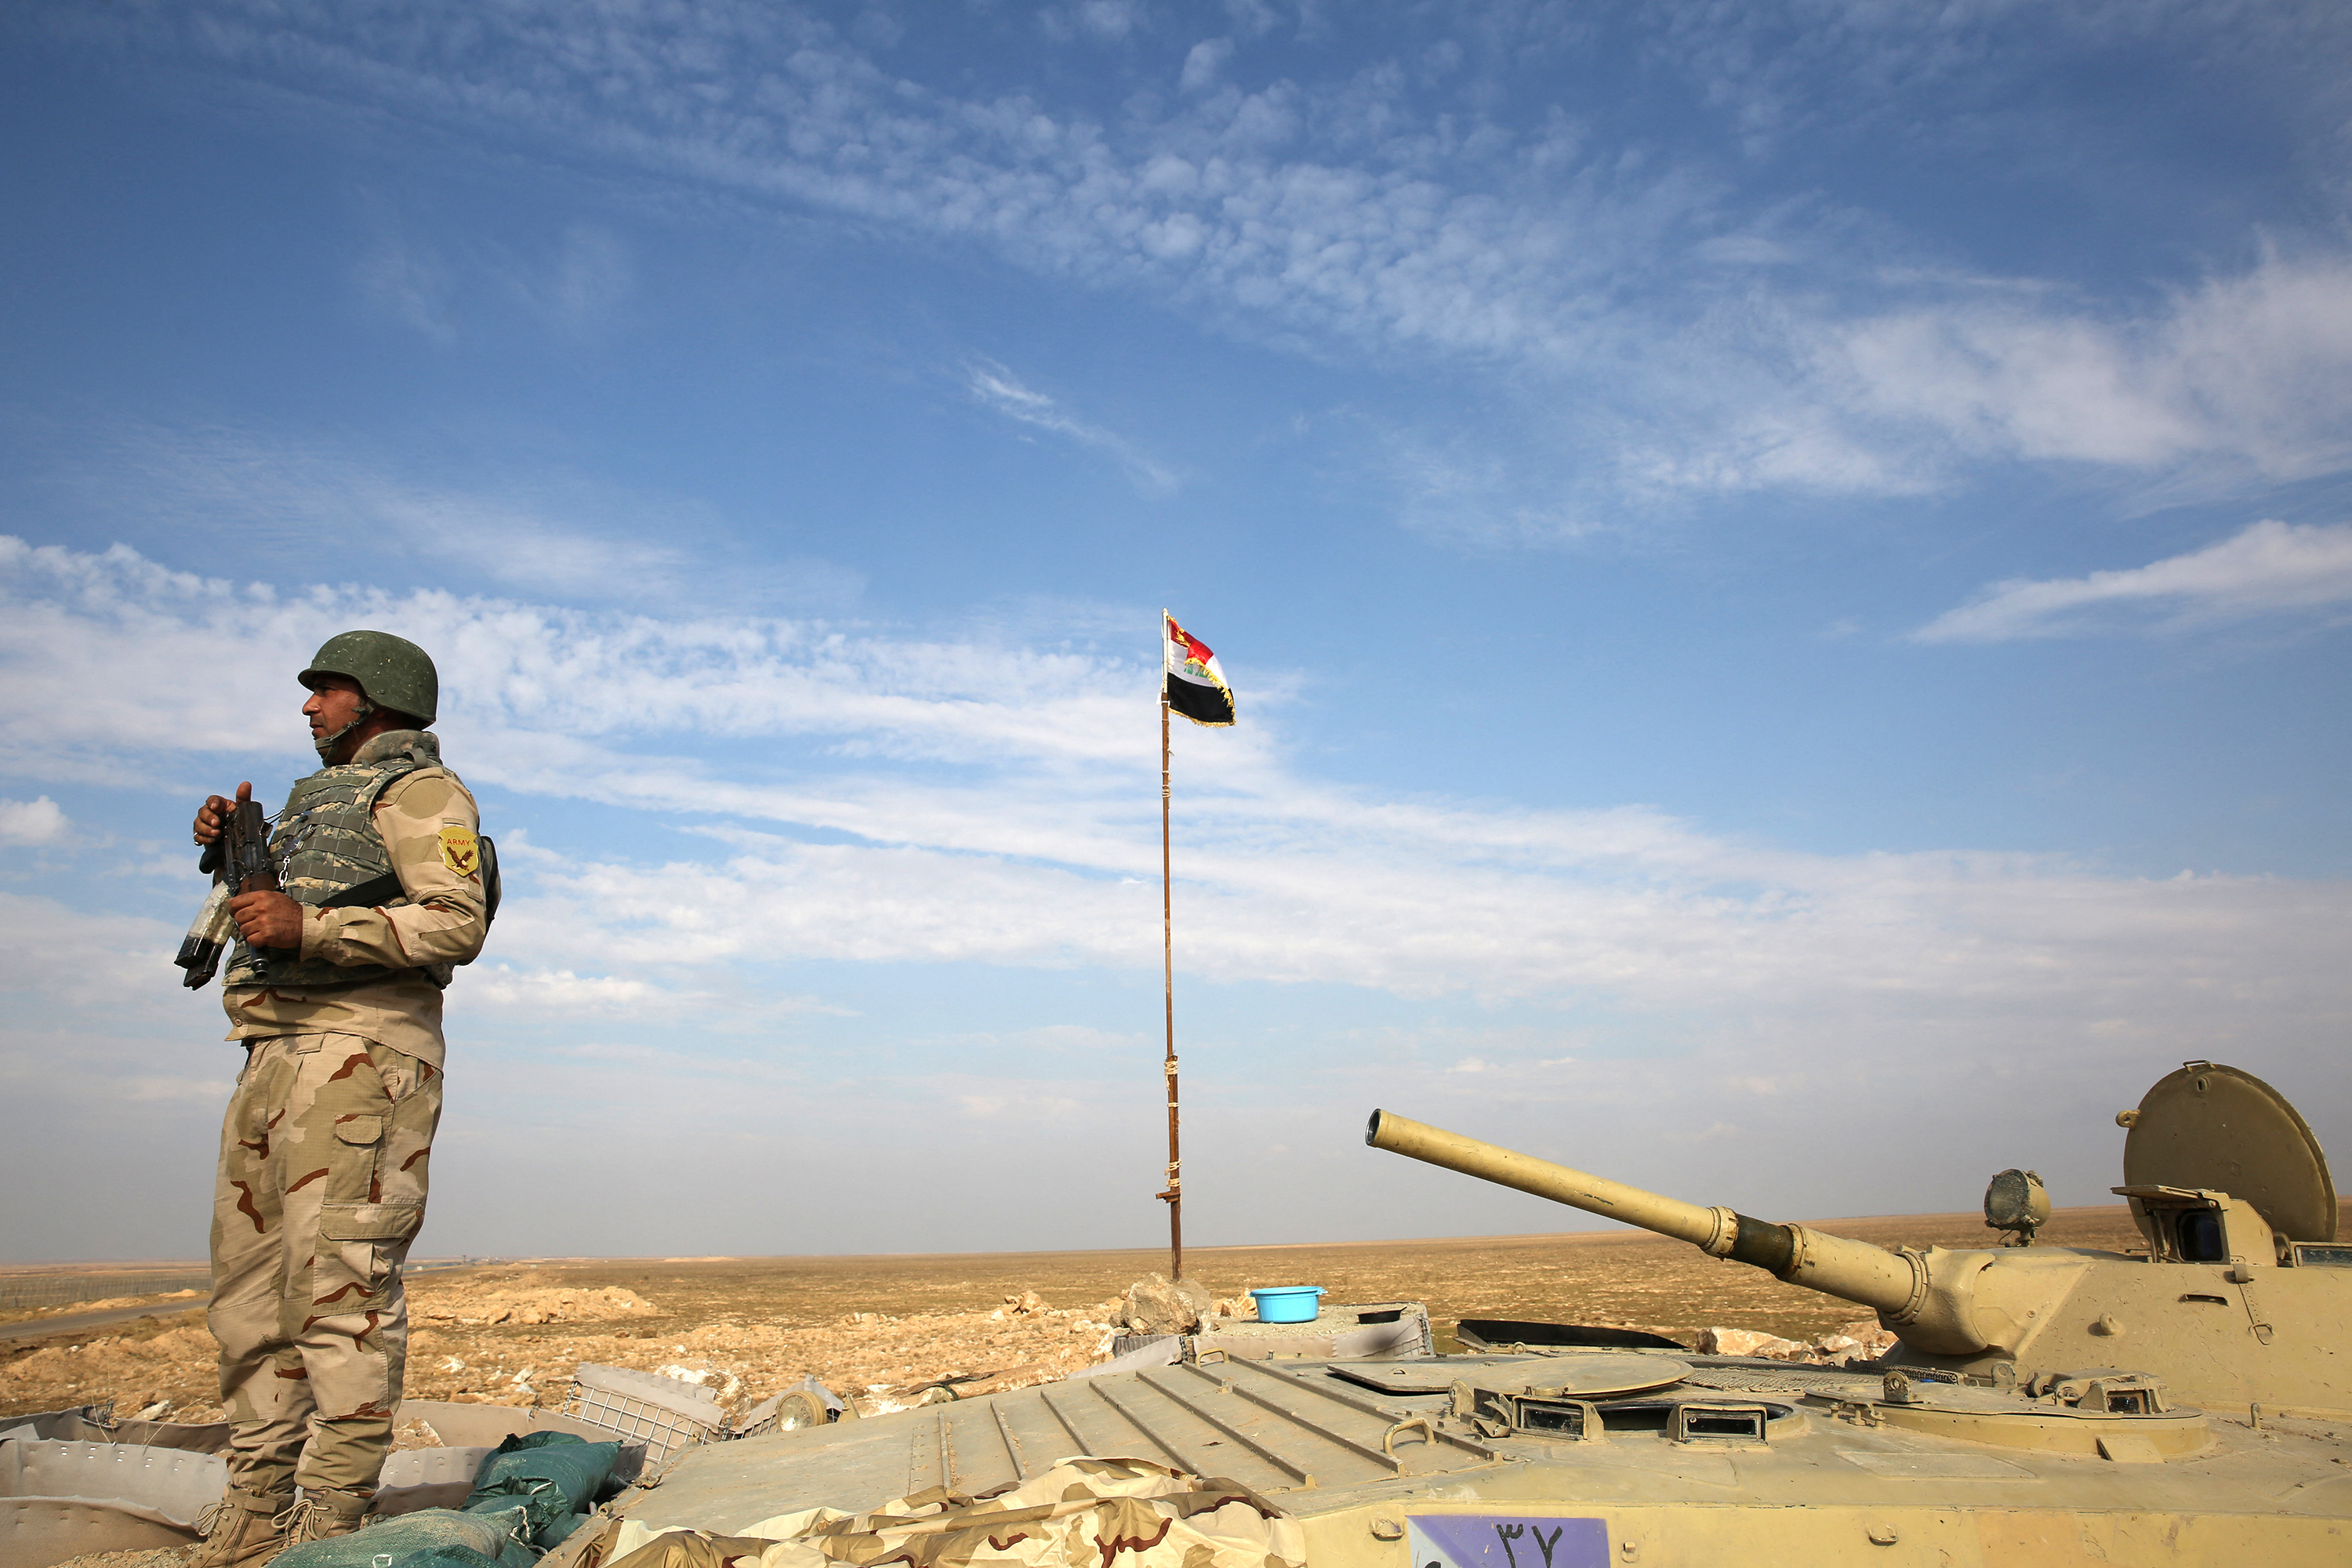 Des soldats irakiens ont été blessés dans le bombardement d'une base, dans la région de Babylone (centre de l'Irak). (Illustration)AFP/AHMAD AL-RUBAYE